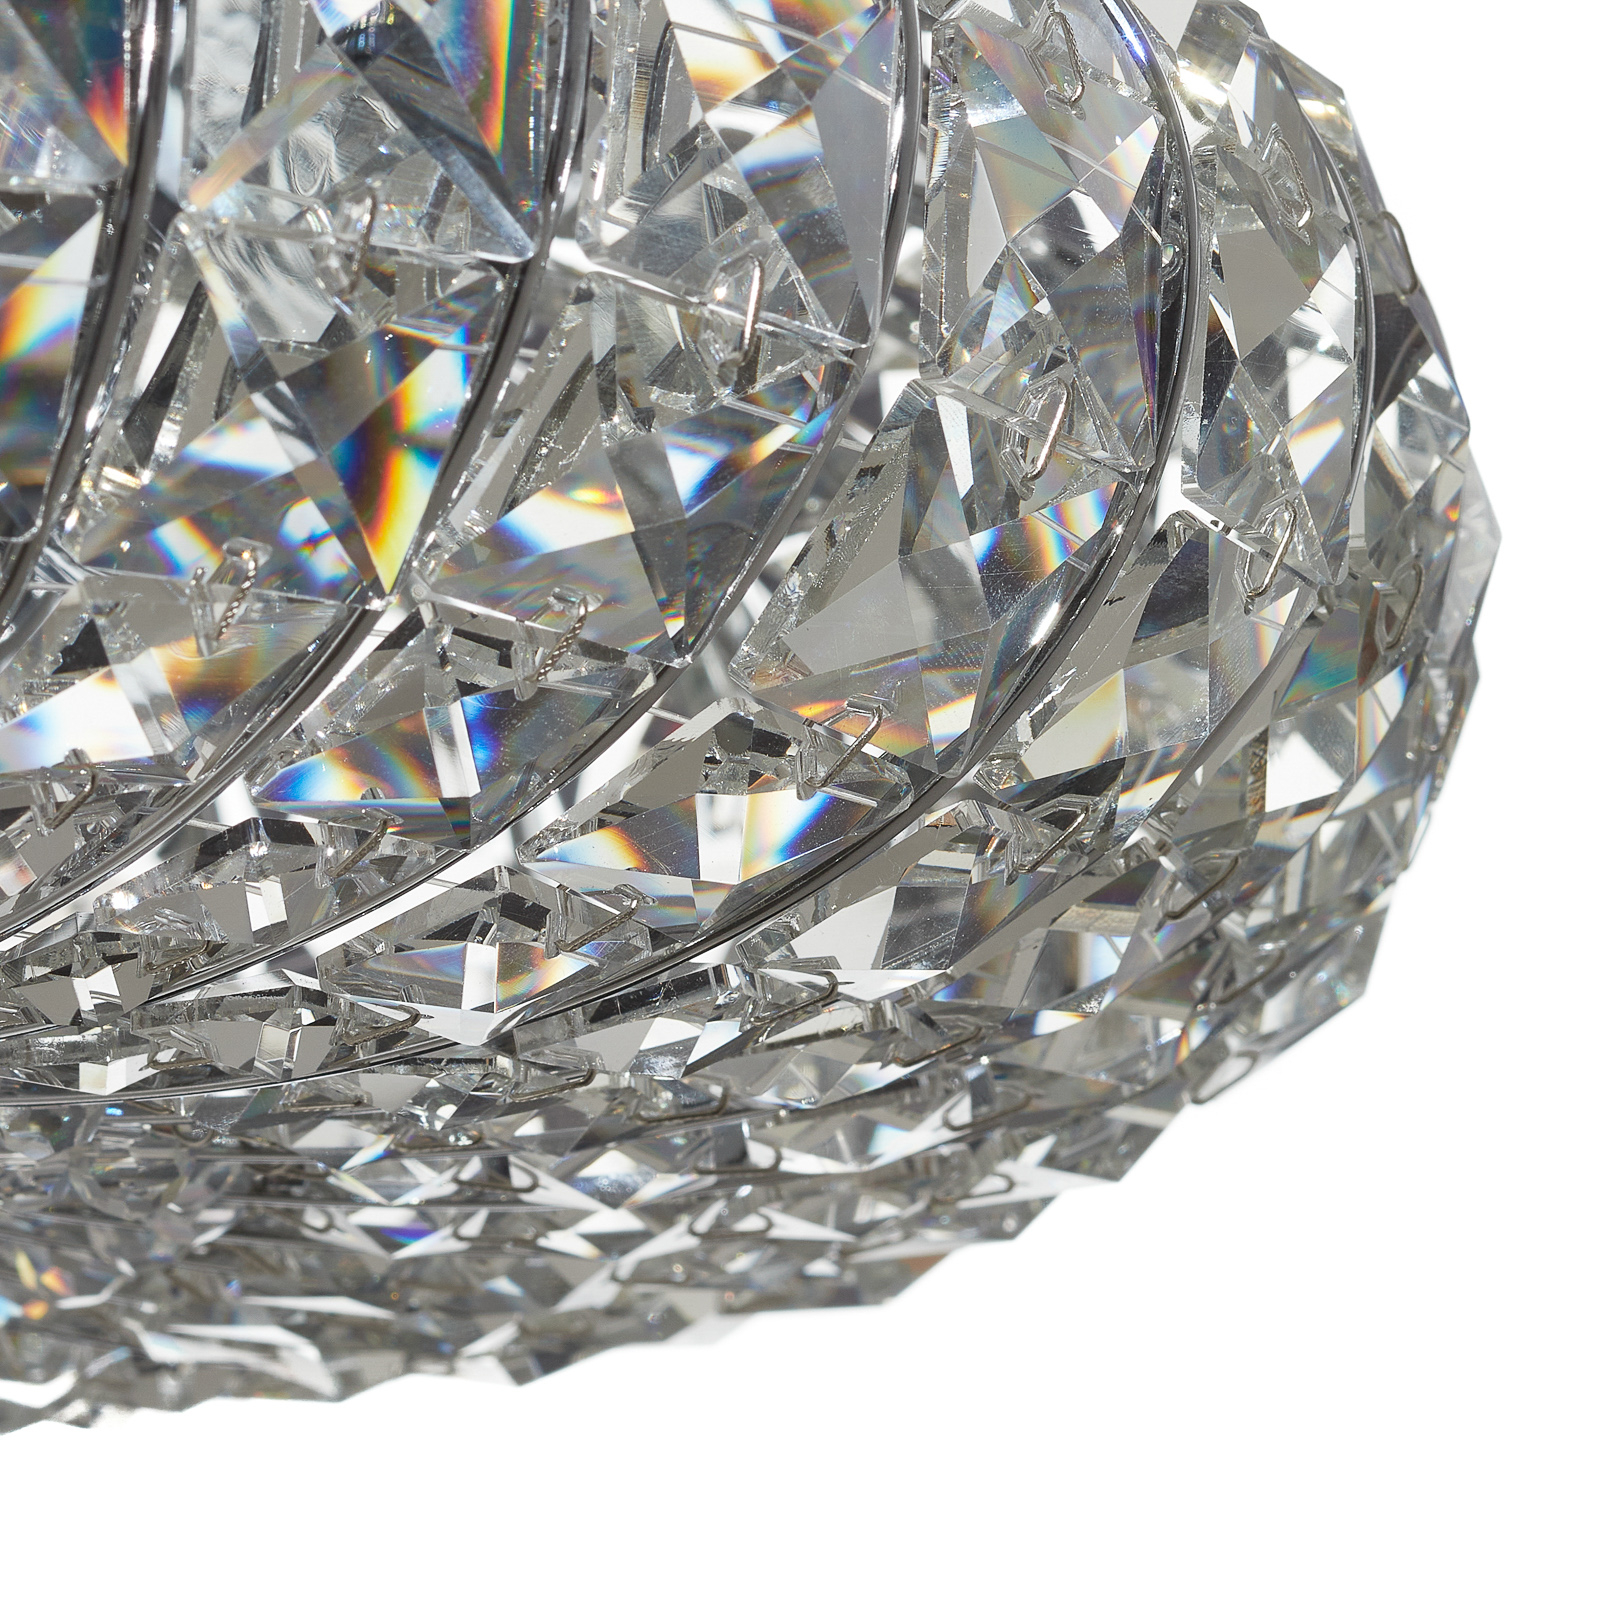 Lubinis šviestuvas "Broche" su kristalais, Ø 49 cm